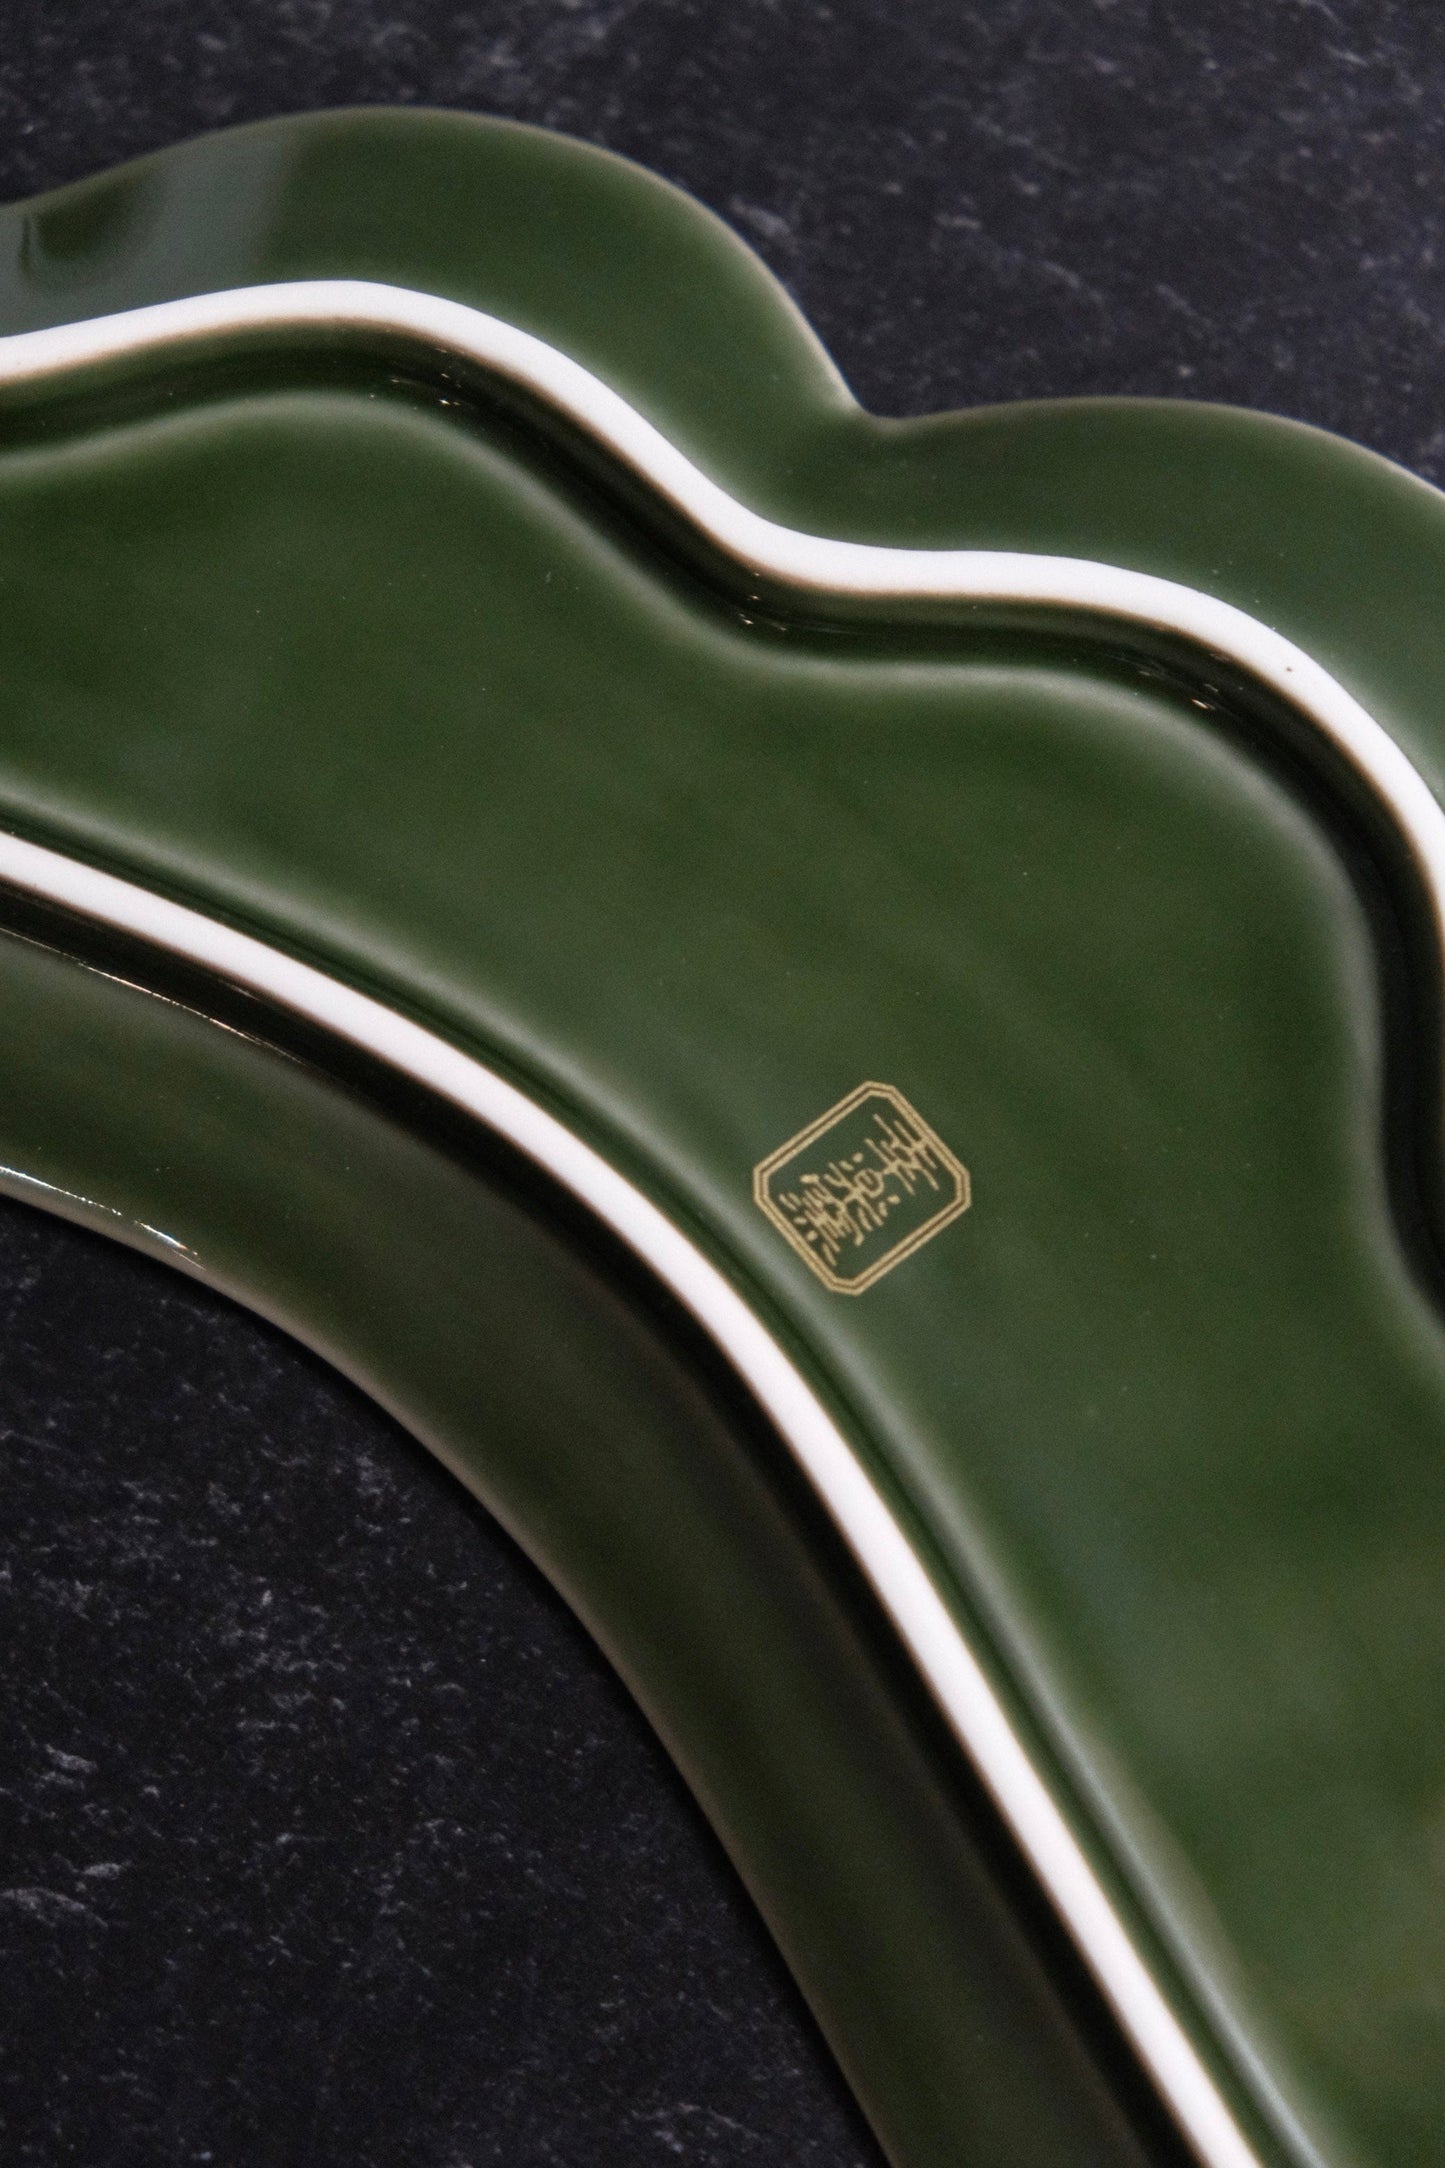 幸楽窯- KOURAKU KILN ARITA WARE Handmade Pine Leaf Long Plate (Gift Box)